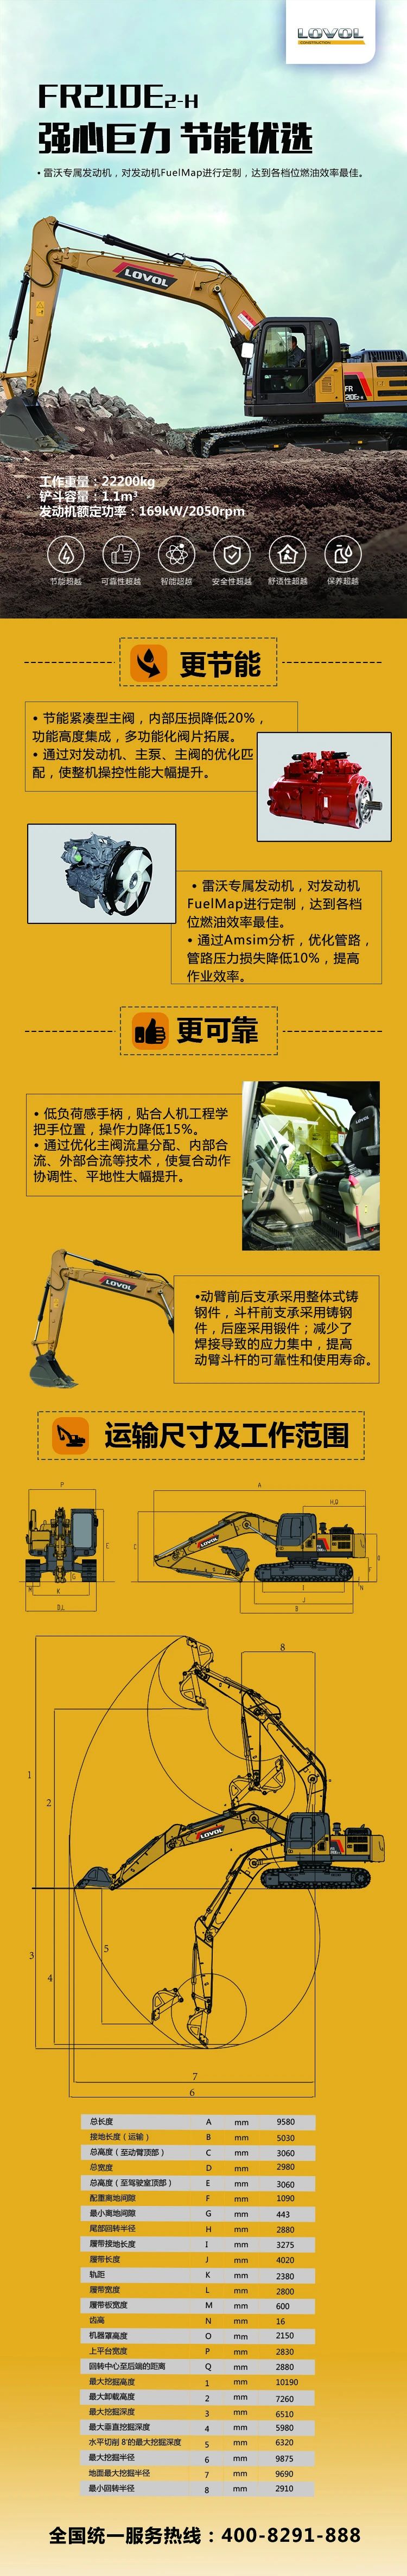 【一图收藏】新品雷沃FR210E2-H挖掘机 强心巨力 节能优选